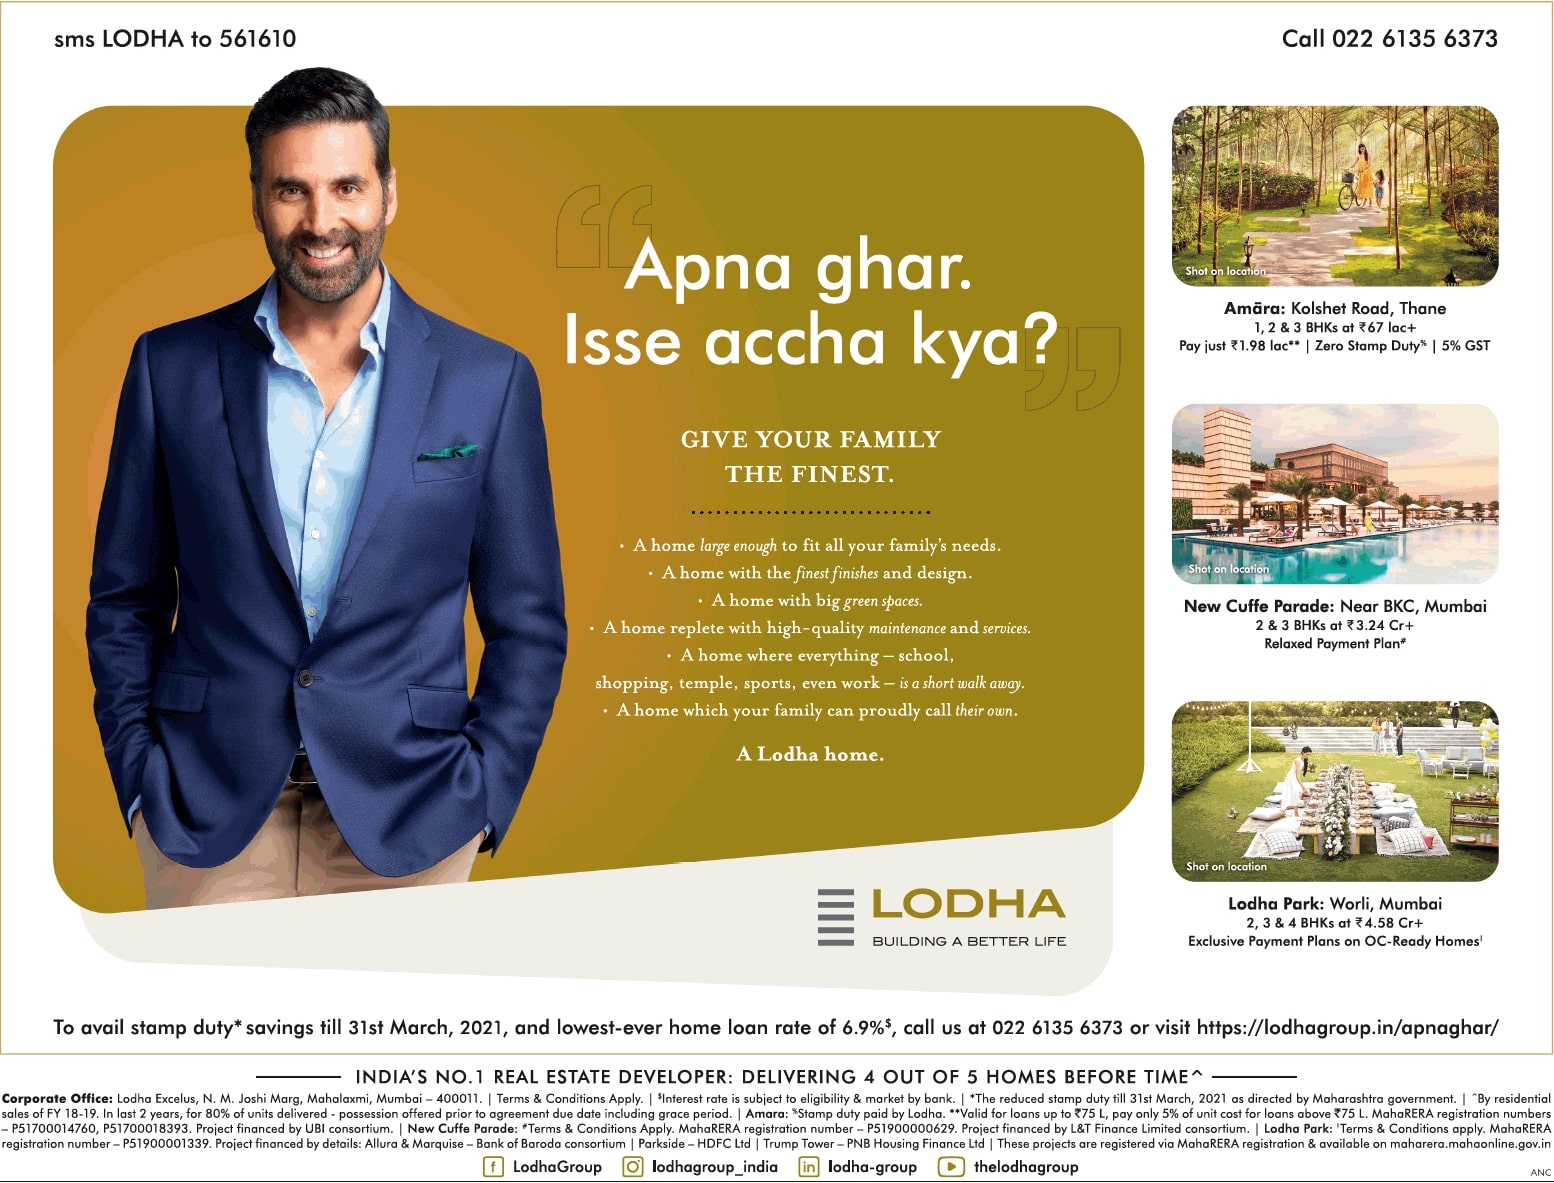 lodha-apna-ghar-isse-accha-kya-akshay-kumar-ad-property-times-mumbai-06-02-2021